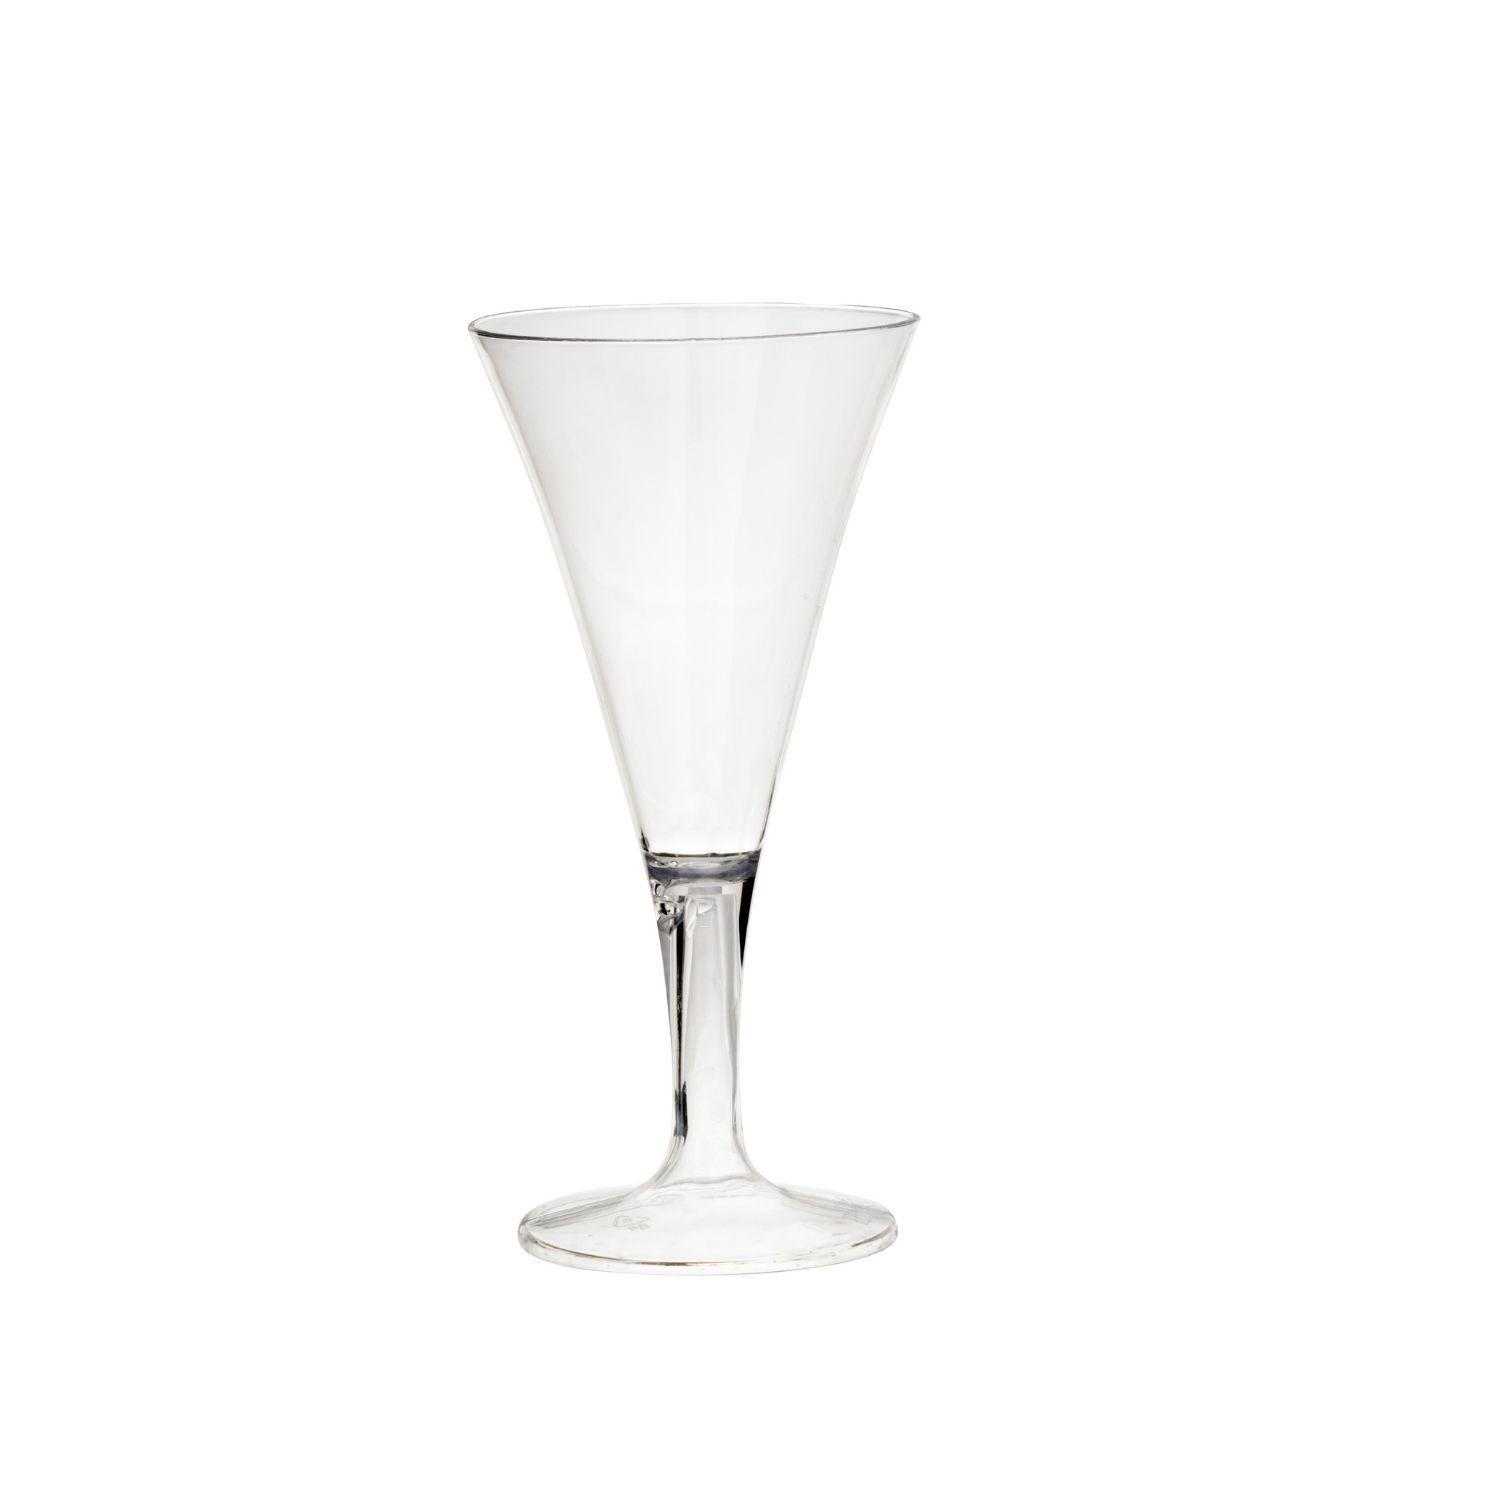 4.4 Oz. Clear Plastic Martini Glasses - 6 Ct.